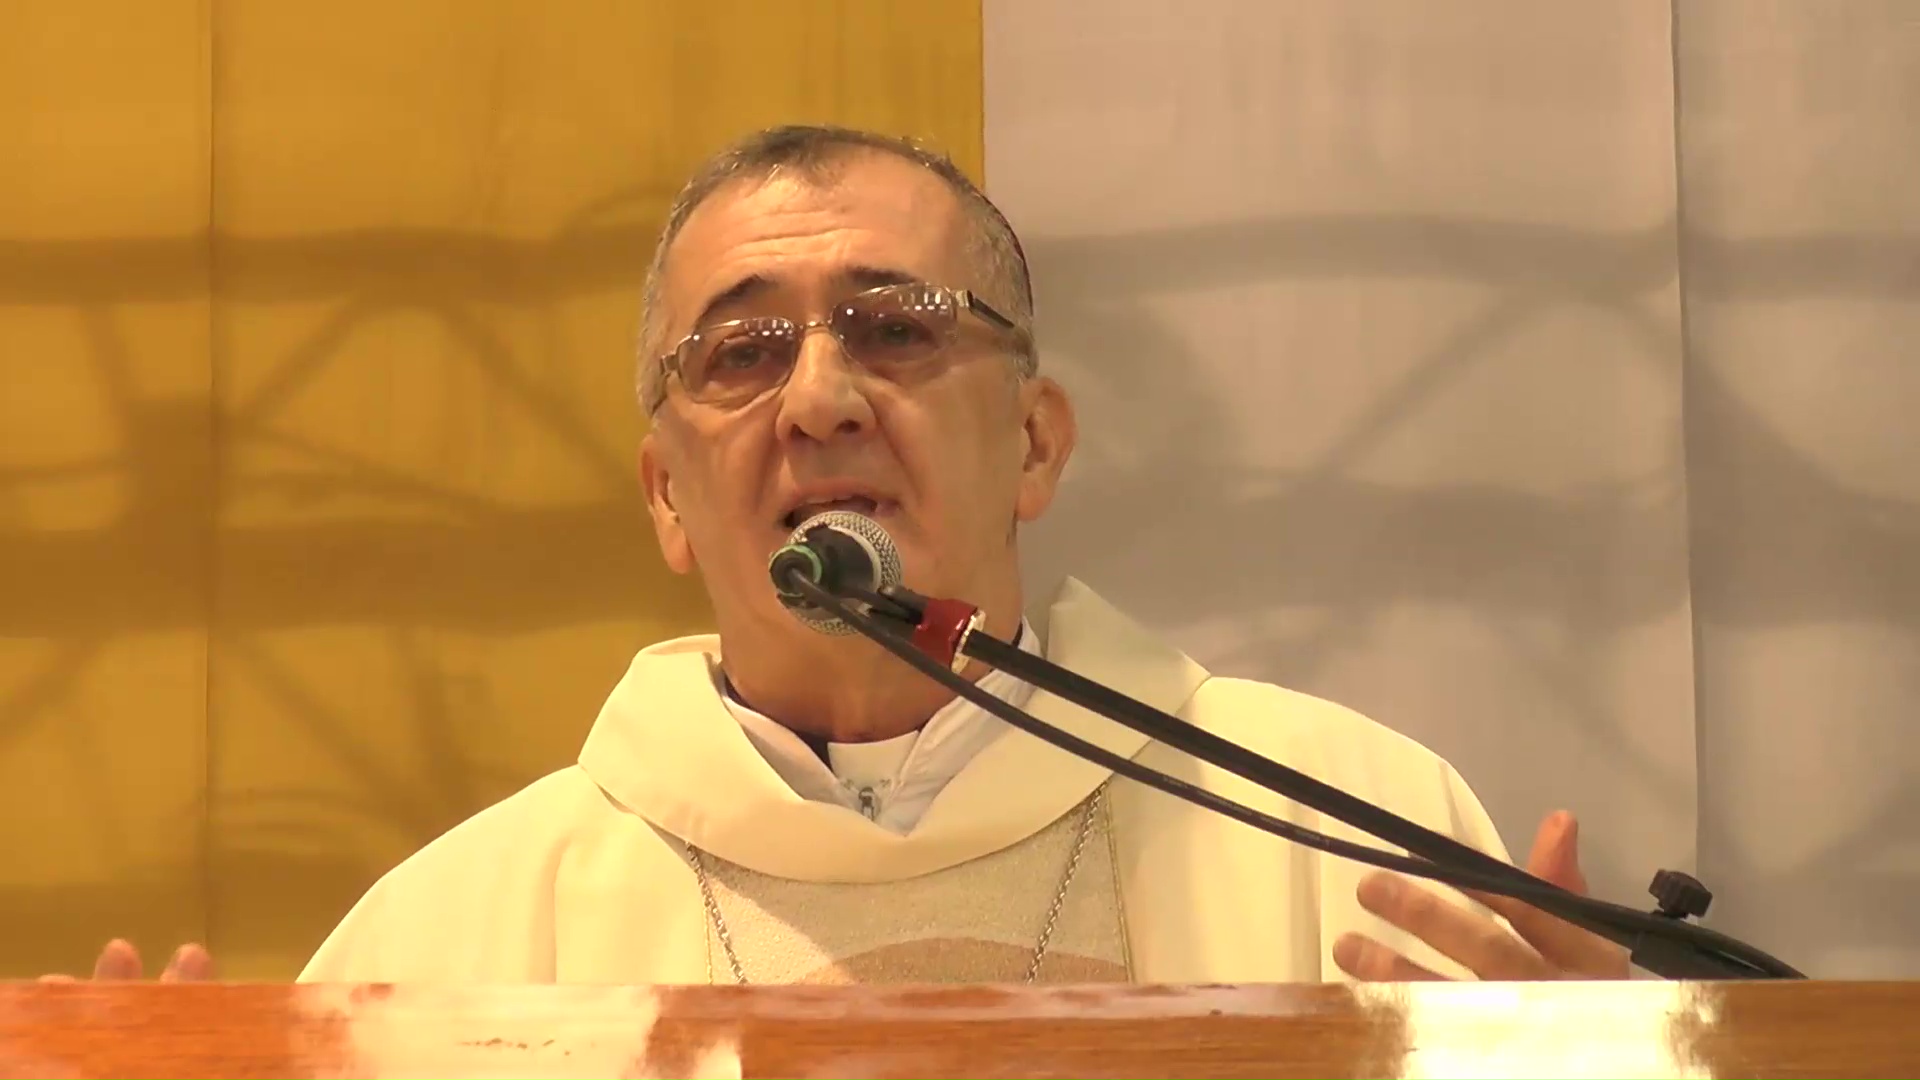 El obispo Martínez volvió a reflexionar a favor de la vida y el niño por nacer